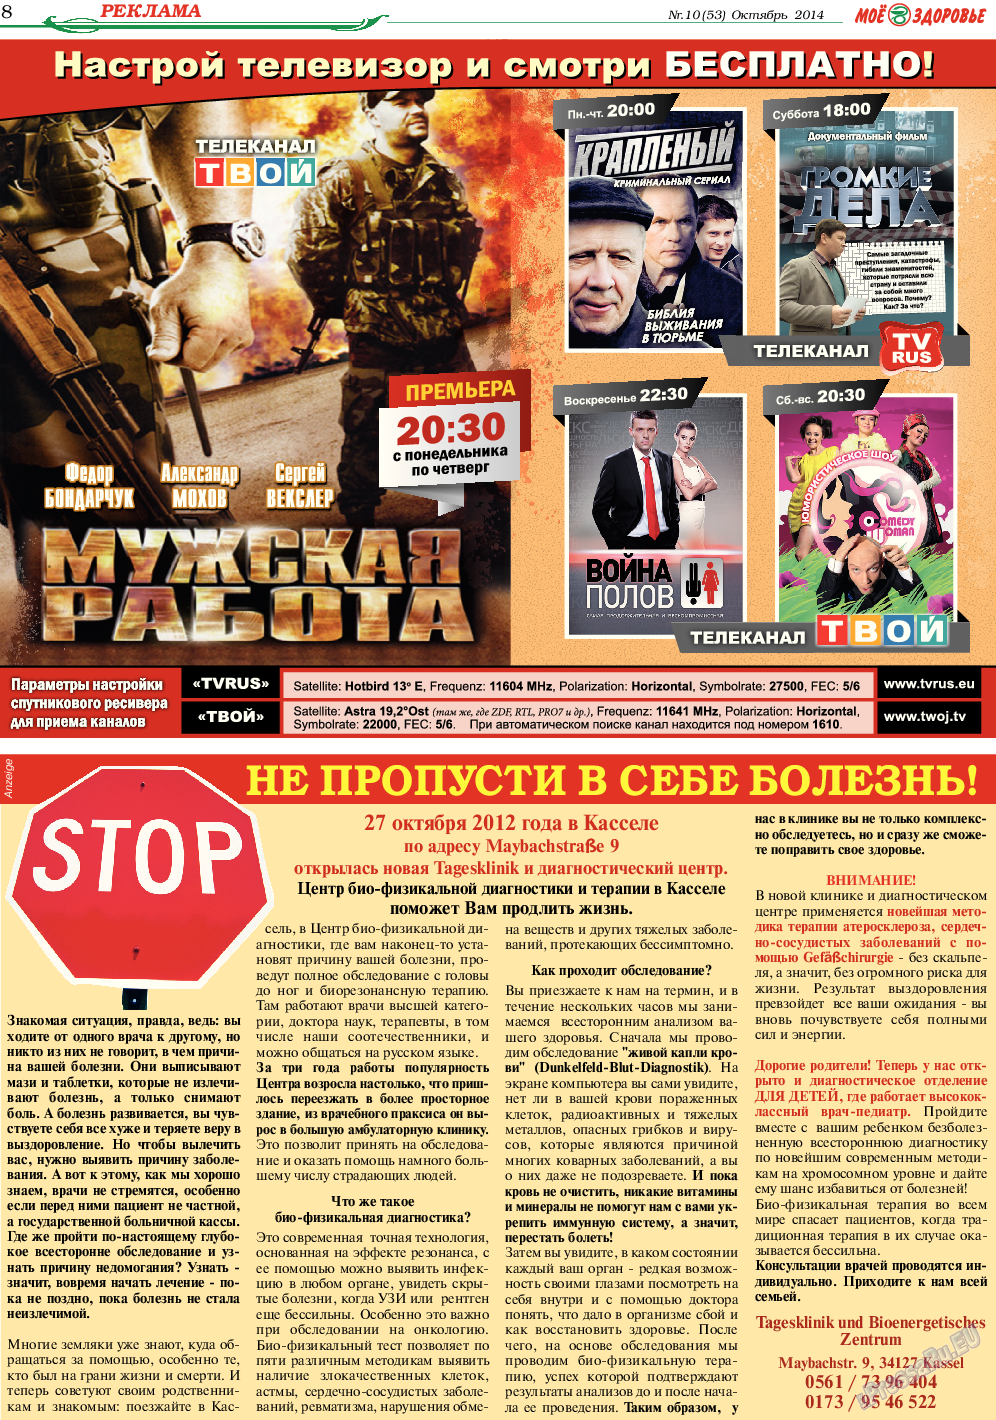 Кругозор, газета. 2014 №10 стр.8